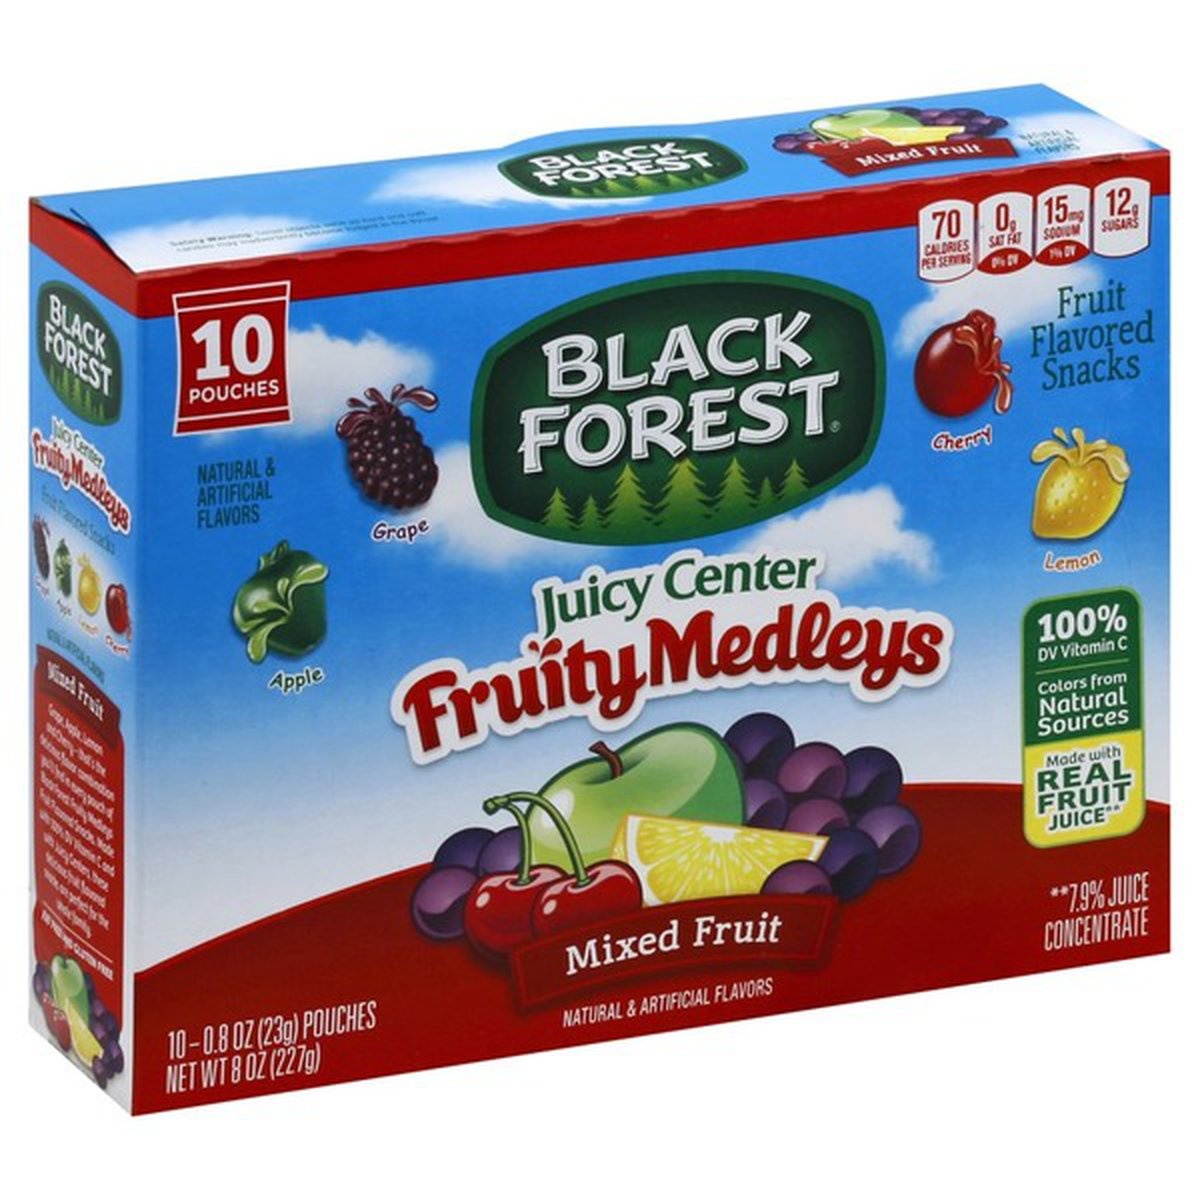 slide 1 of 1, Black Forest Fruit Flavored Snacks, Fruit Medleys, Mixed Fruit, Juicy Center, 10 ct